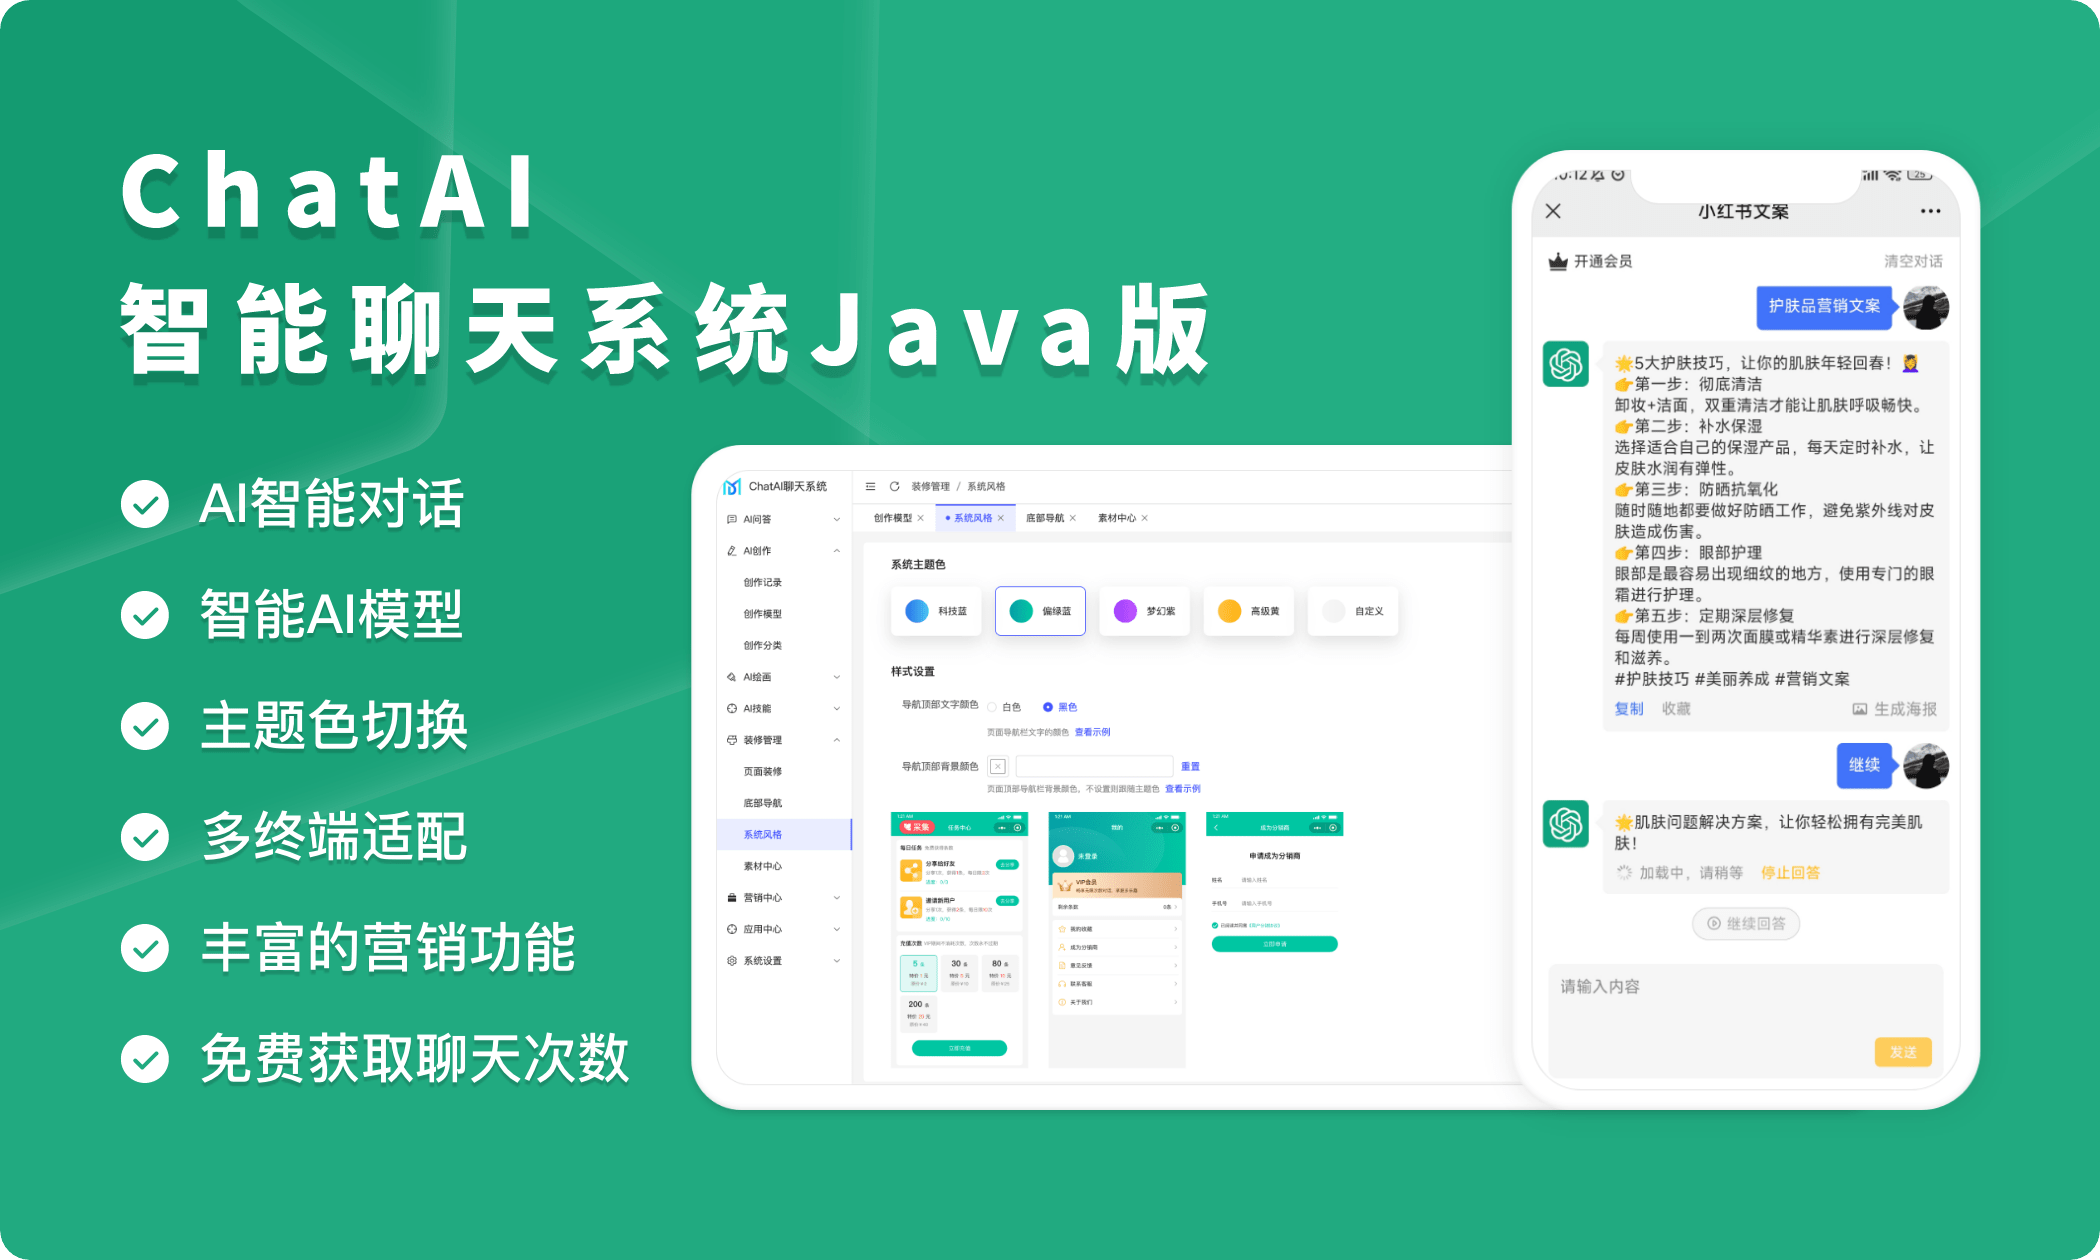 ChatAI-聊天绘画系统「Java源码版」